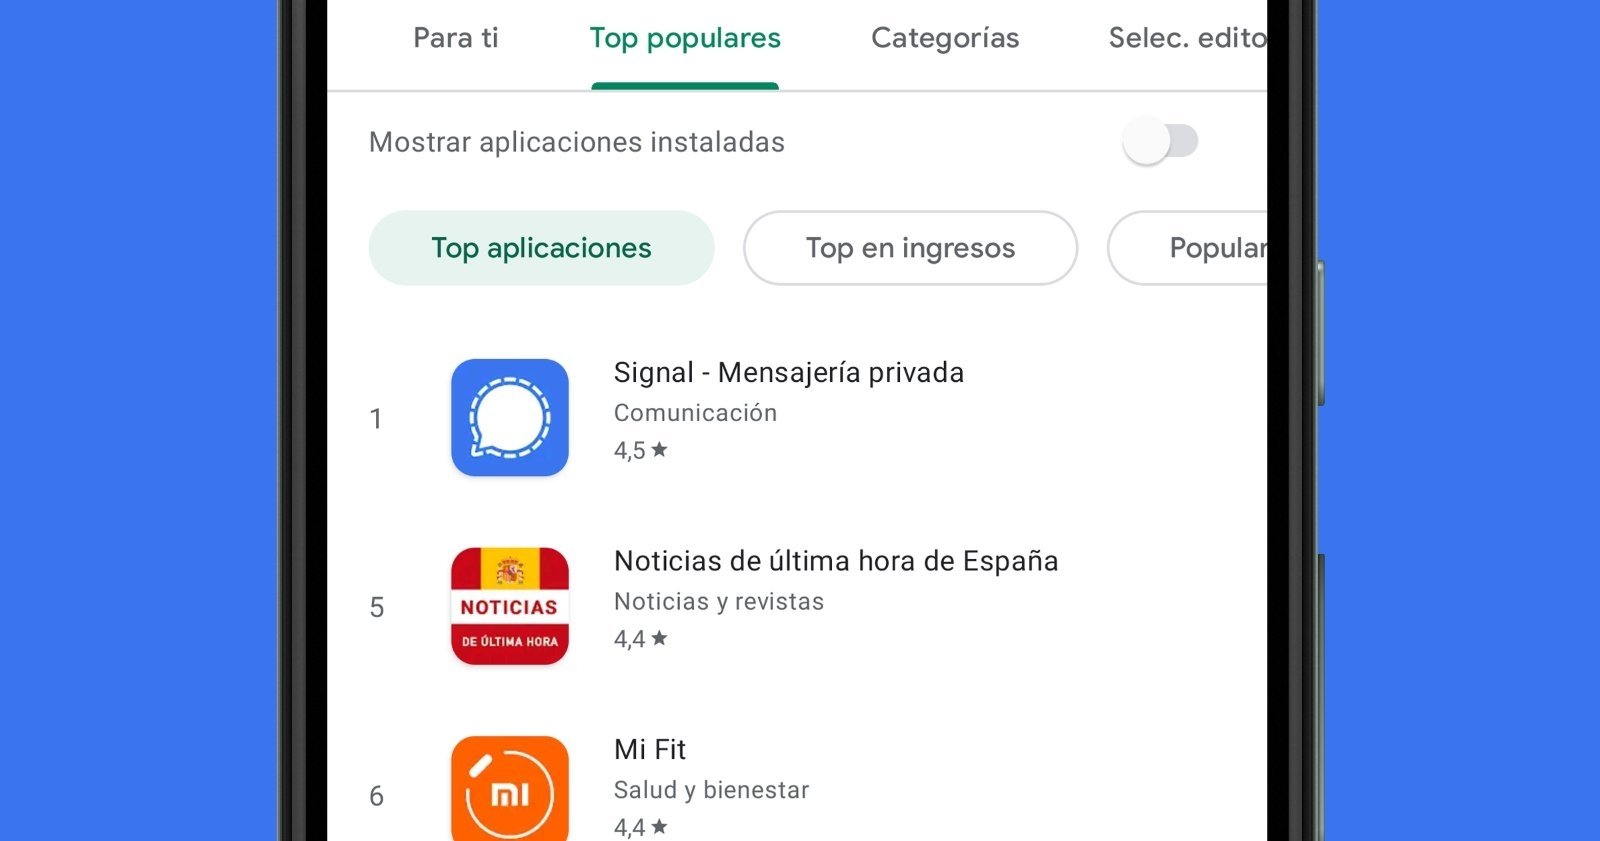 Signal, en el top 1 de apps más populares.